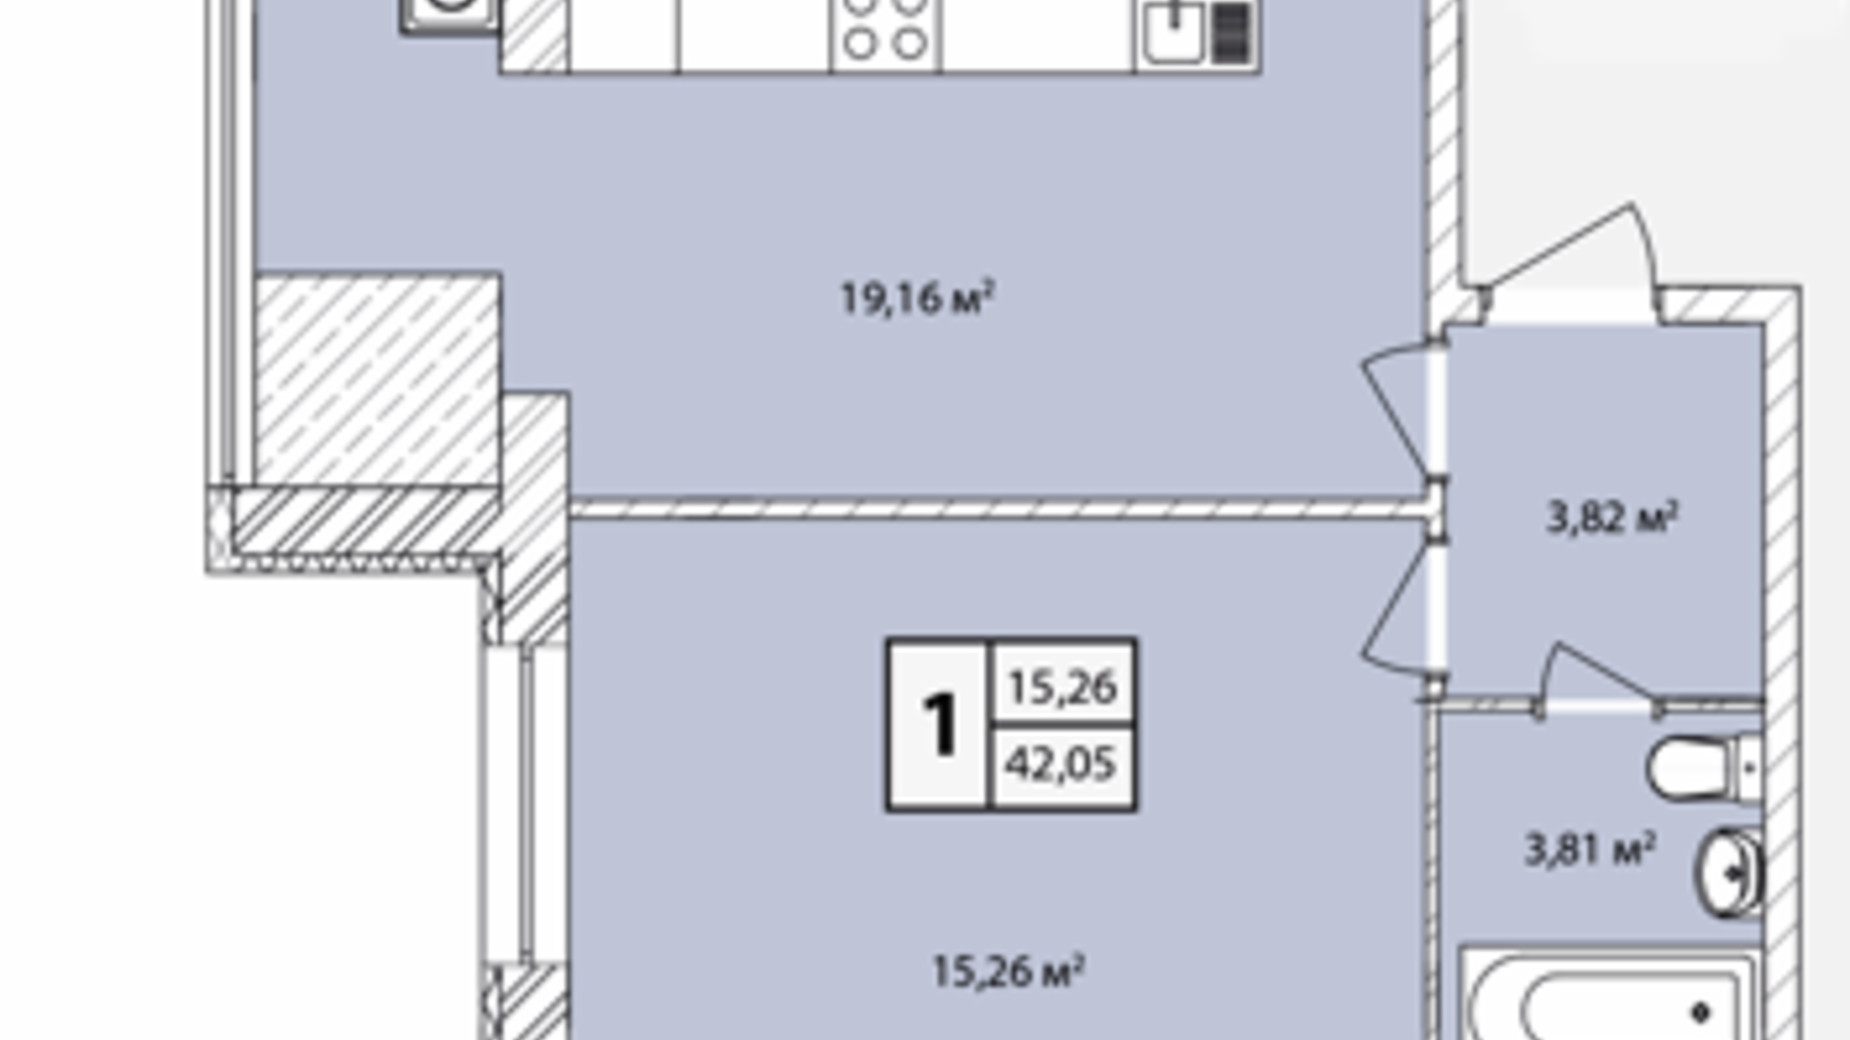 Планировка 1-комнатной квартиры в ЖК Прага Gold 42.05 м², фото 631208